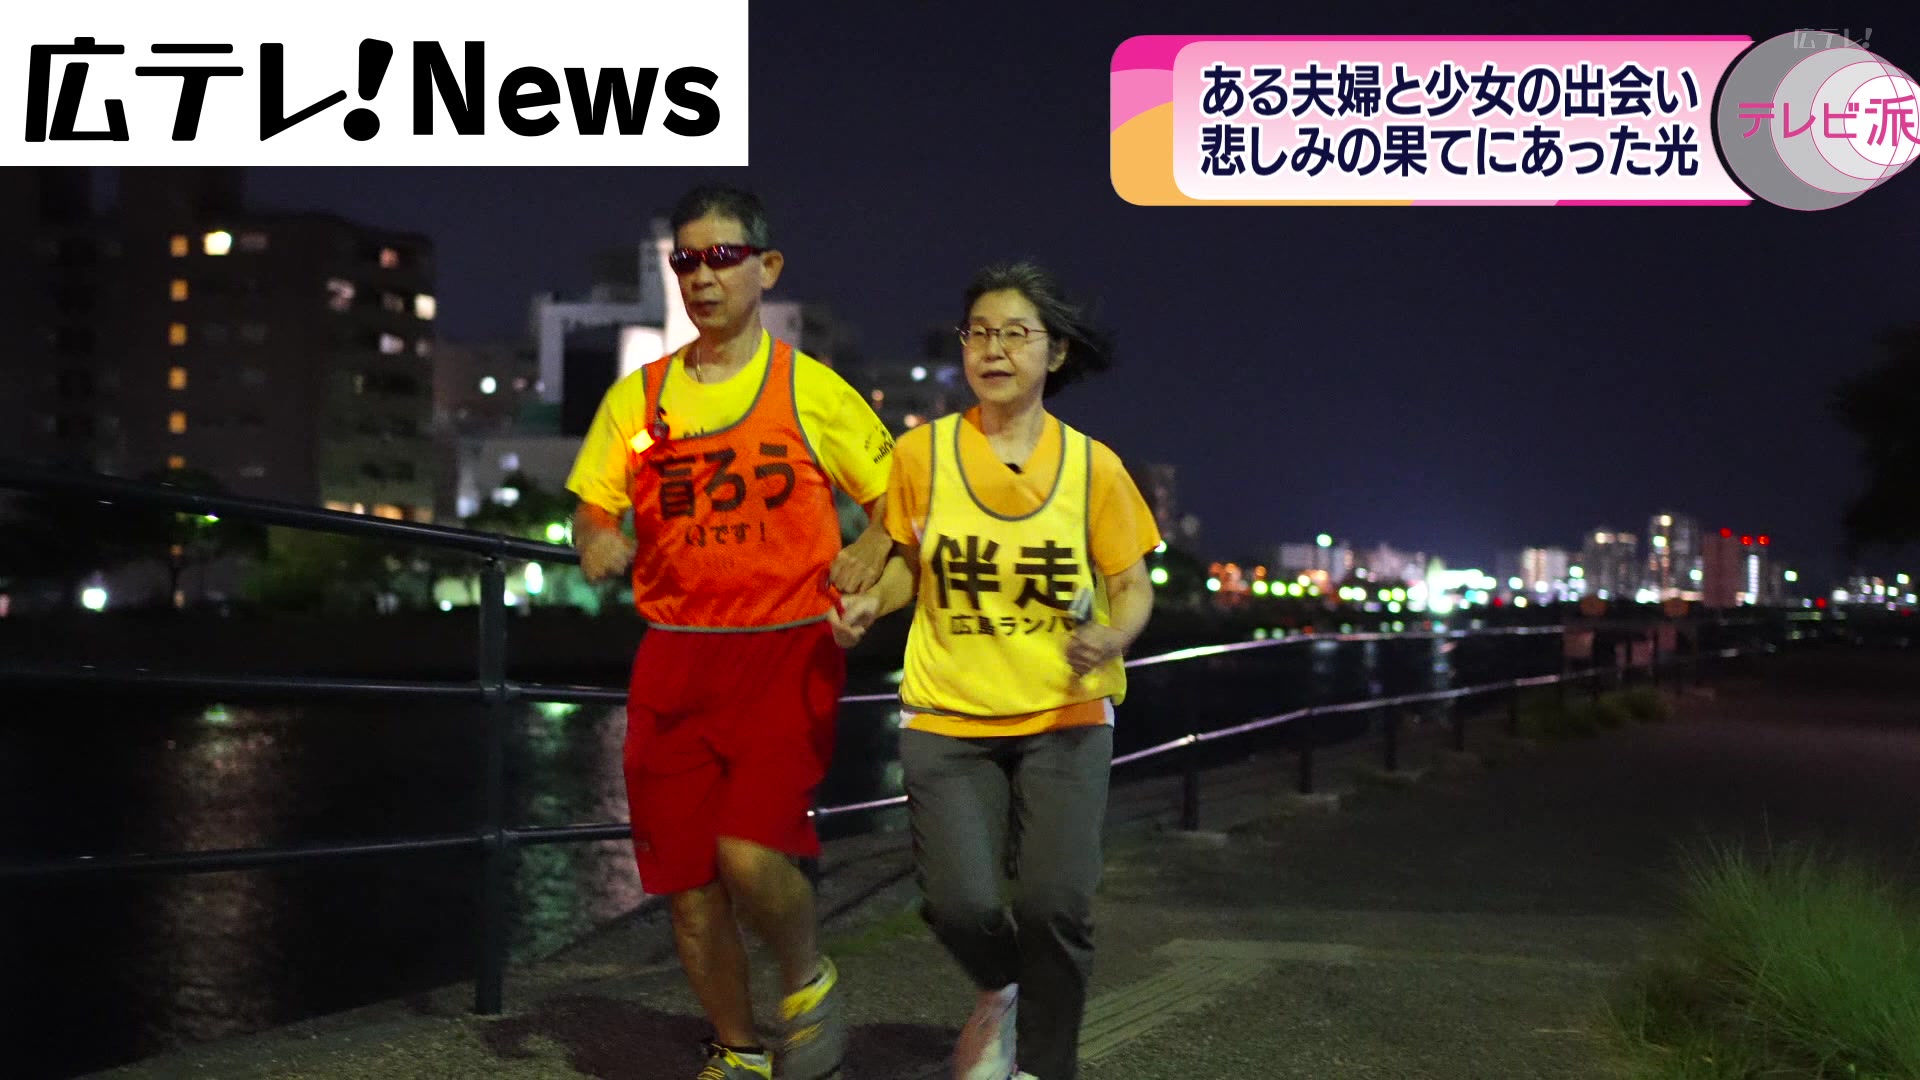 夫婦で紡ぐ新たな絆…聴力と視力に障害がある男性ランナーの挑戦   広島市